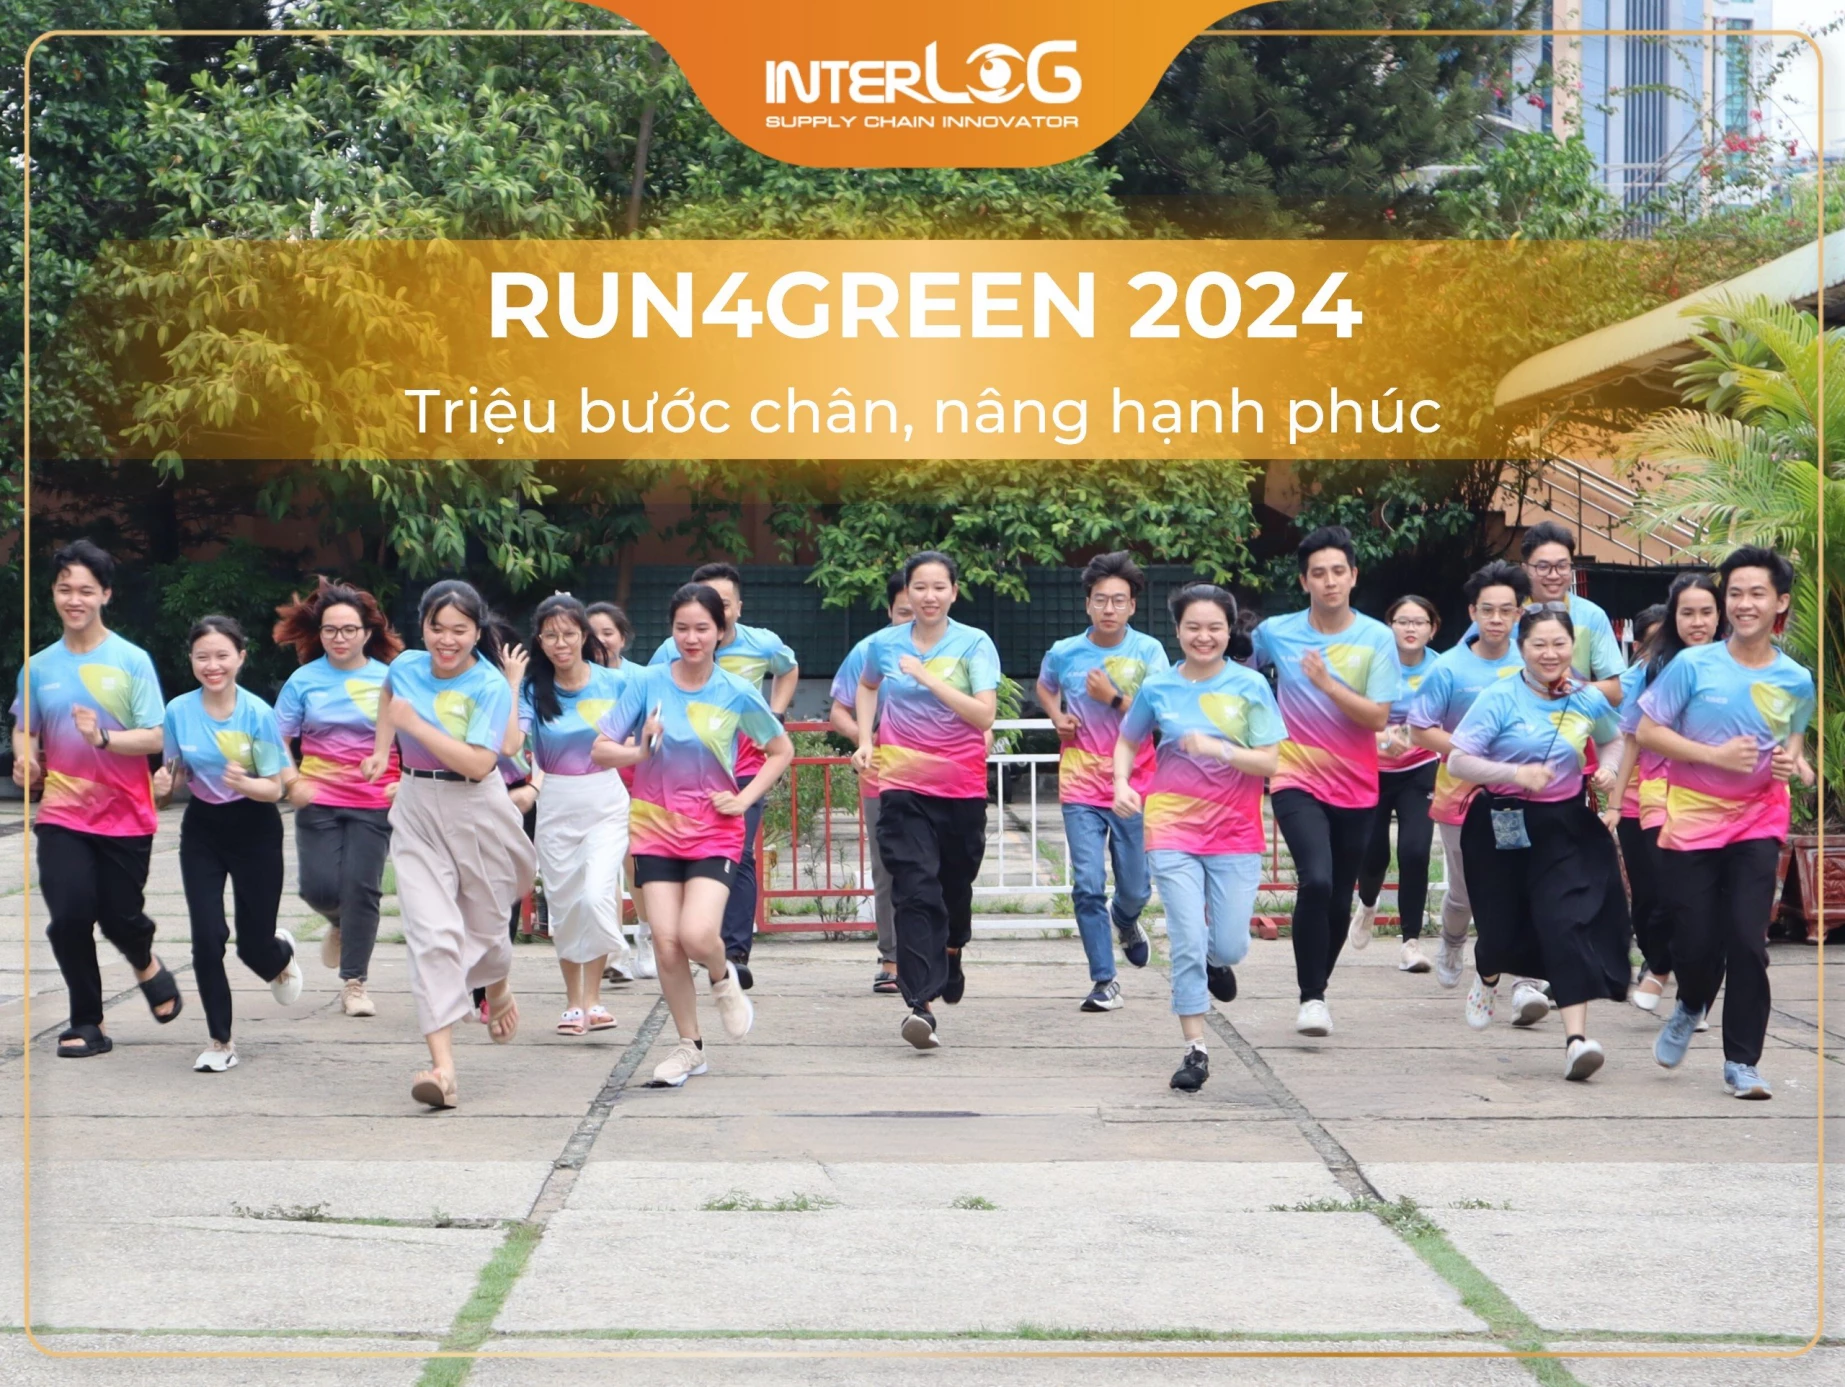 [Run4Green] RUN4GREEN 2024 - Hướng tới tương lai xanh qua những bước chạy hạnh phúc